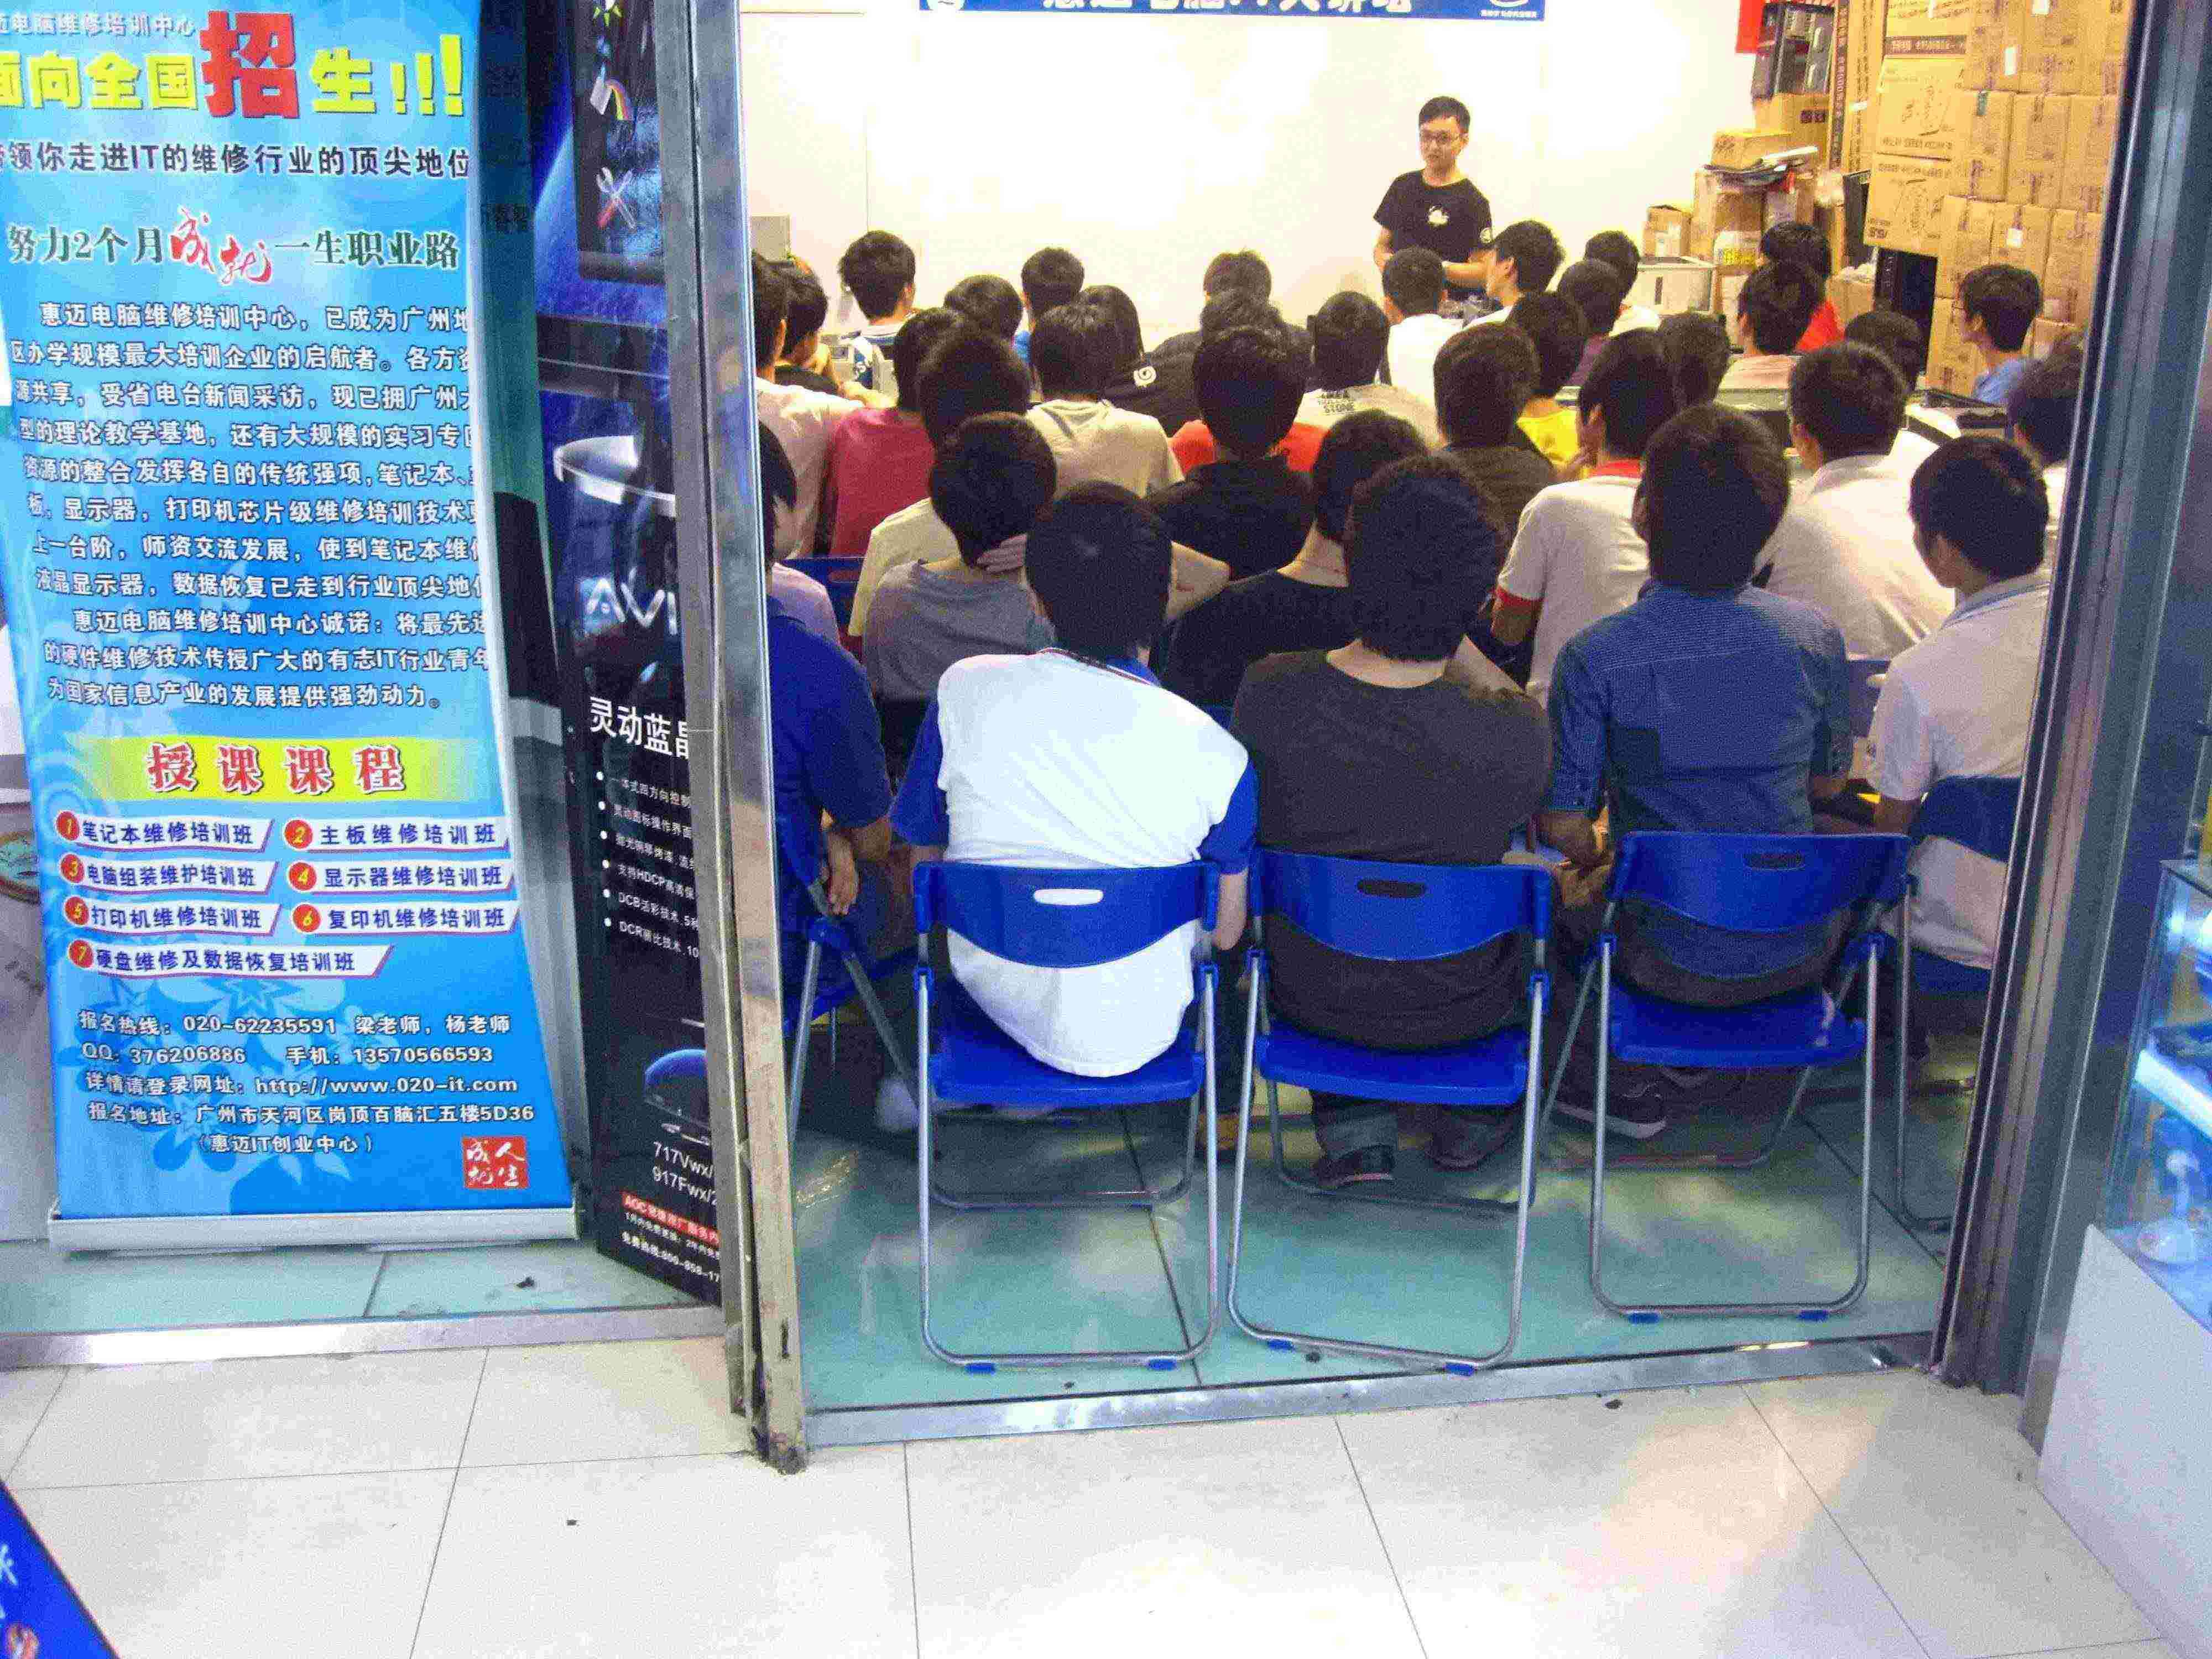 廣州惠邁電腦維修培訓學校